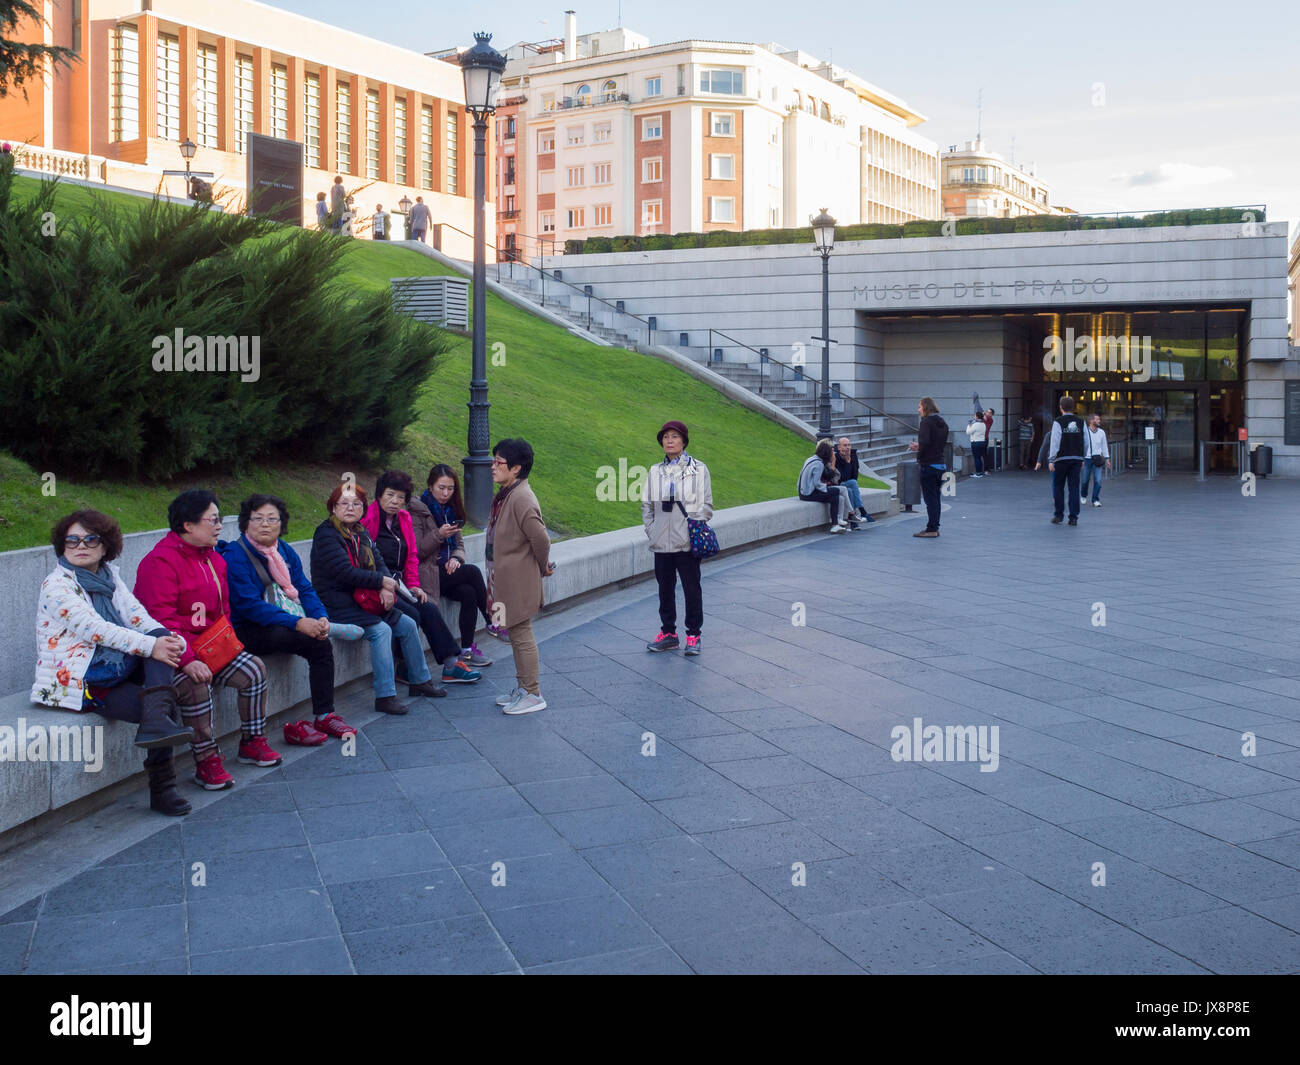 Salida del Museo del Prado. Madrid. España Foto Stock